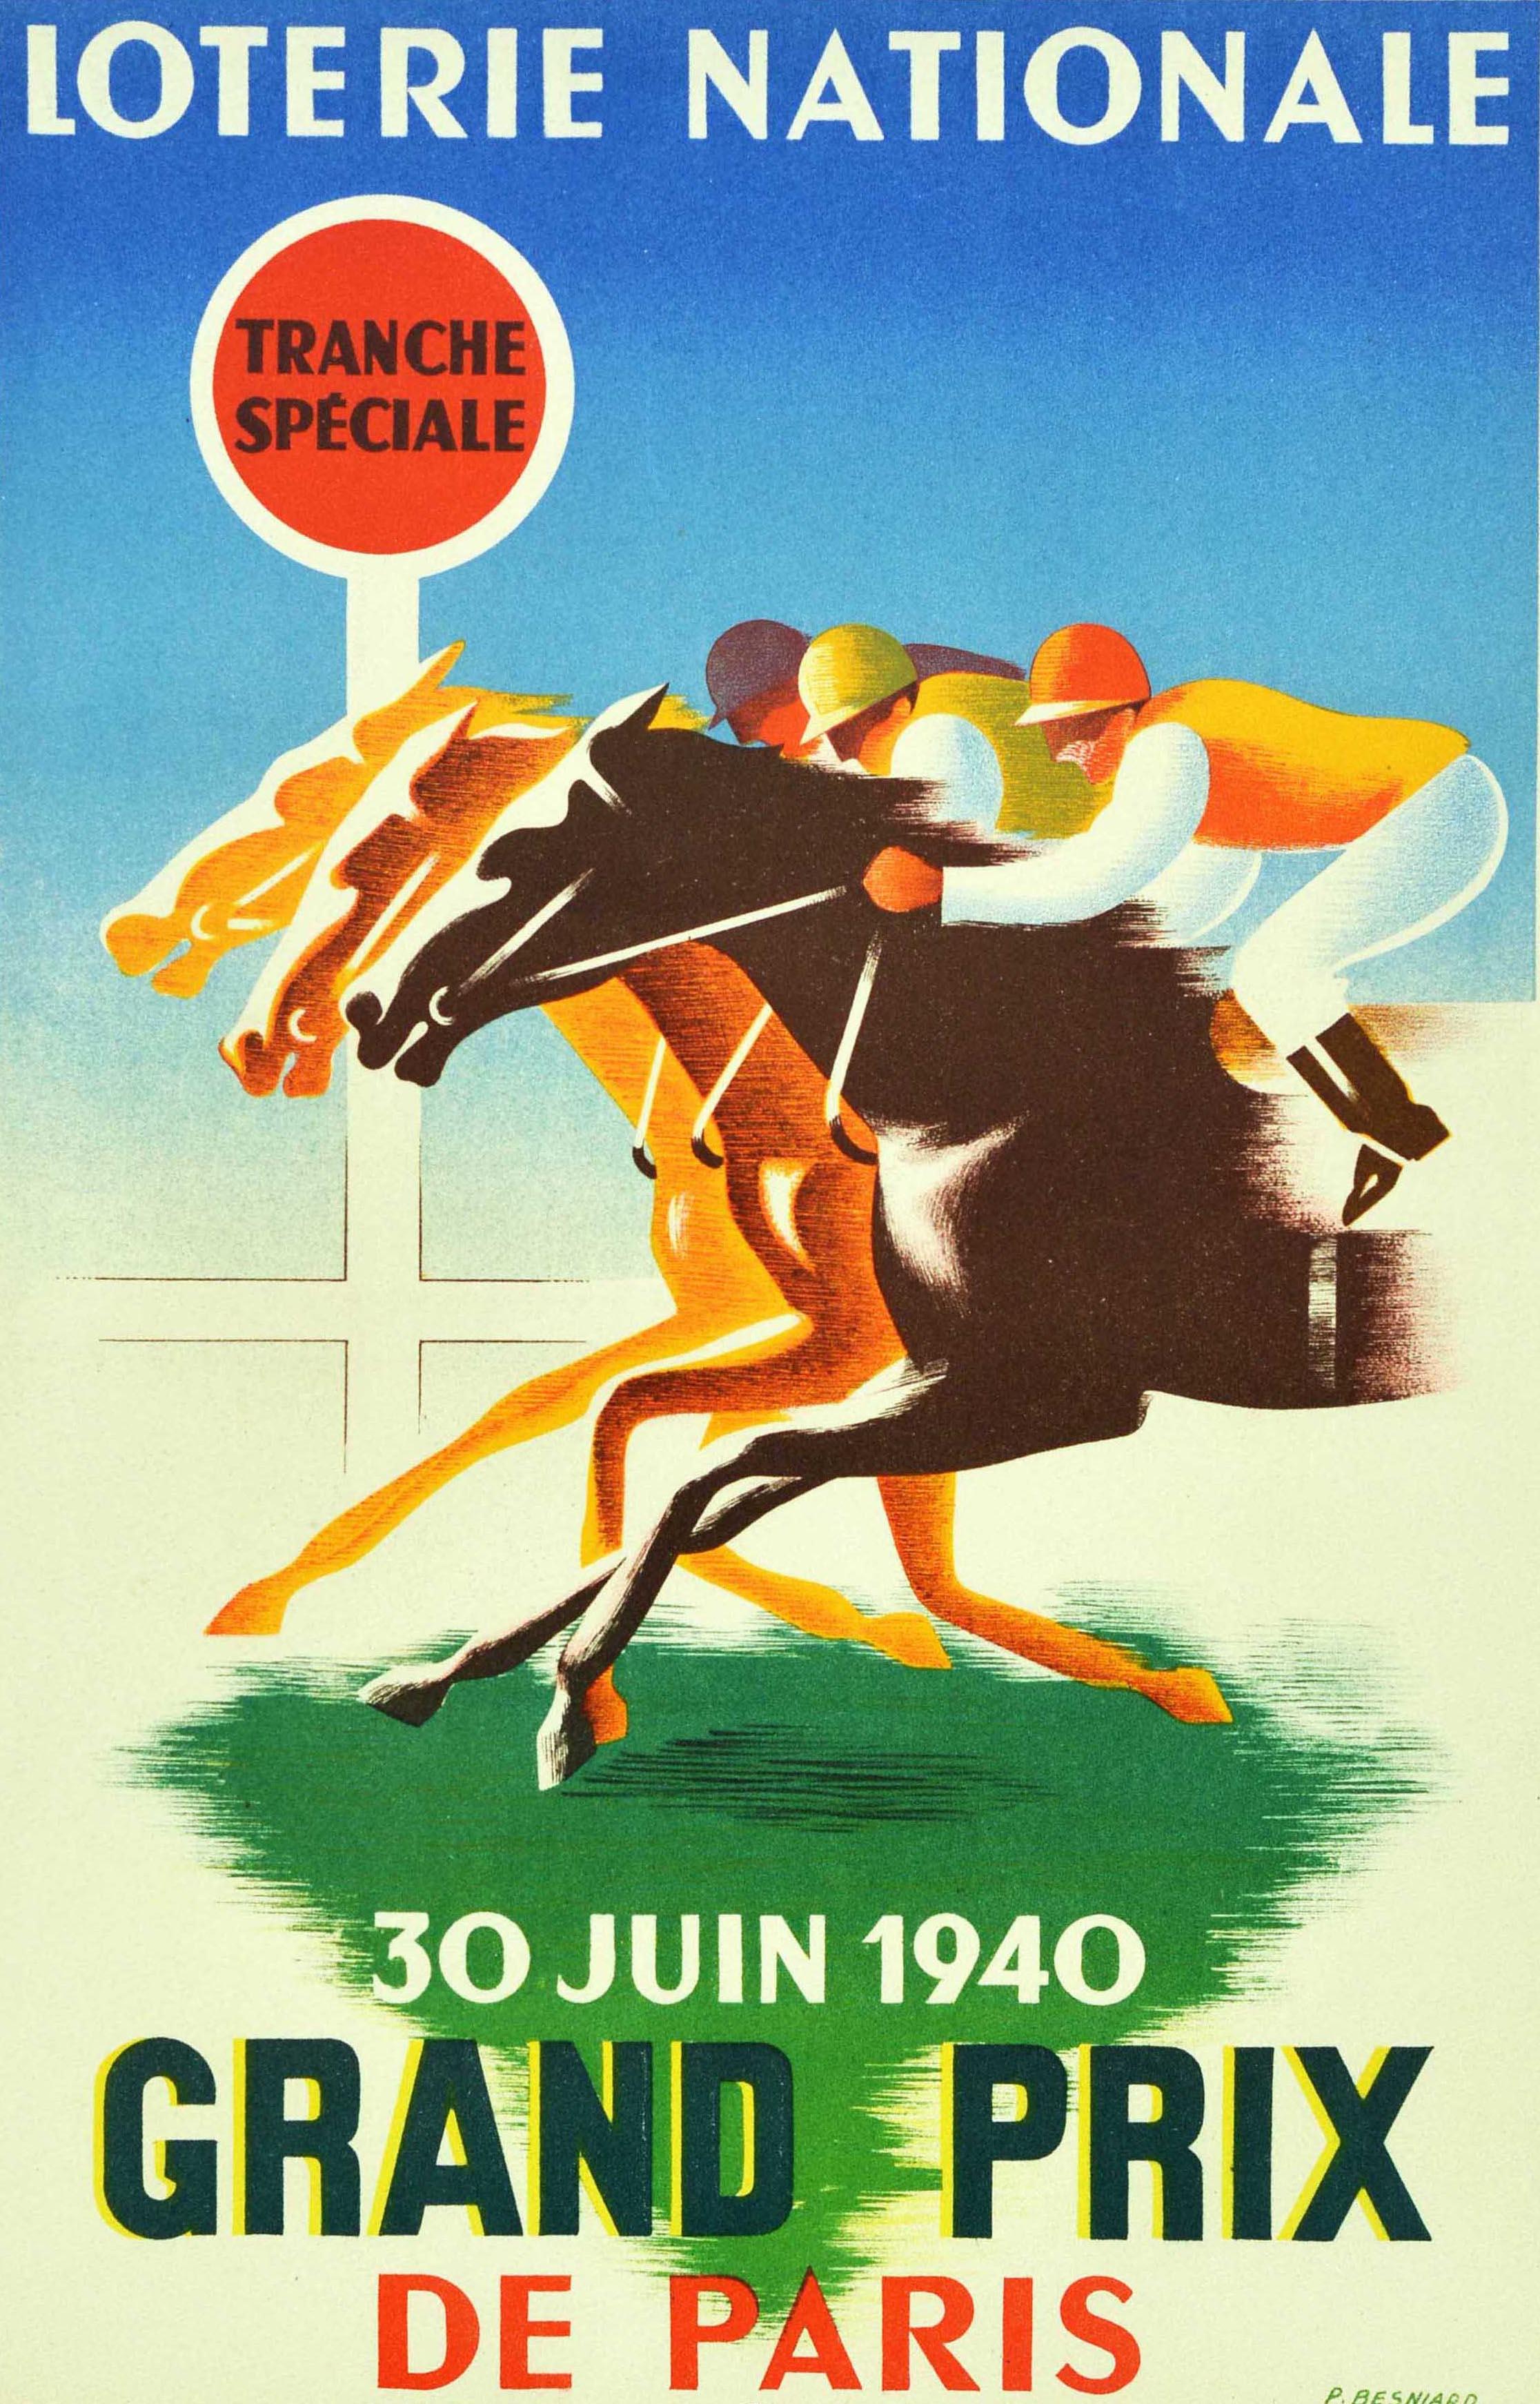 Affiche publicitaire originale d'époque pour la Loterie Nationale Tranche Spéciale Grand Prix De Paris, loterie nationale française du 30 juin 1940, avec un dessin de course de chevaux représentant trois jockeys faisant courir leurs chevaux au